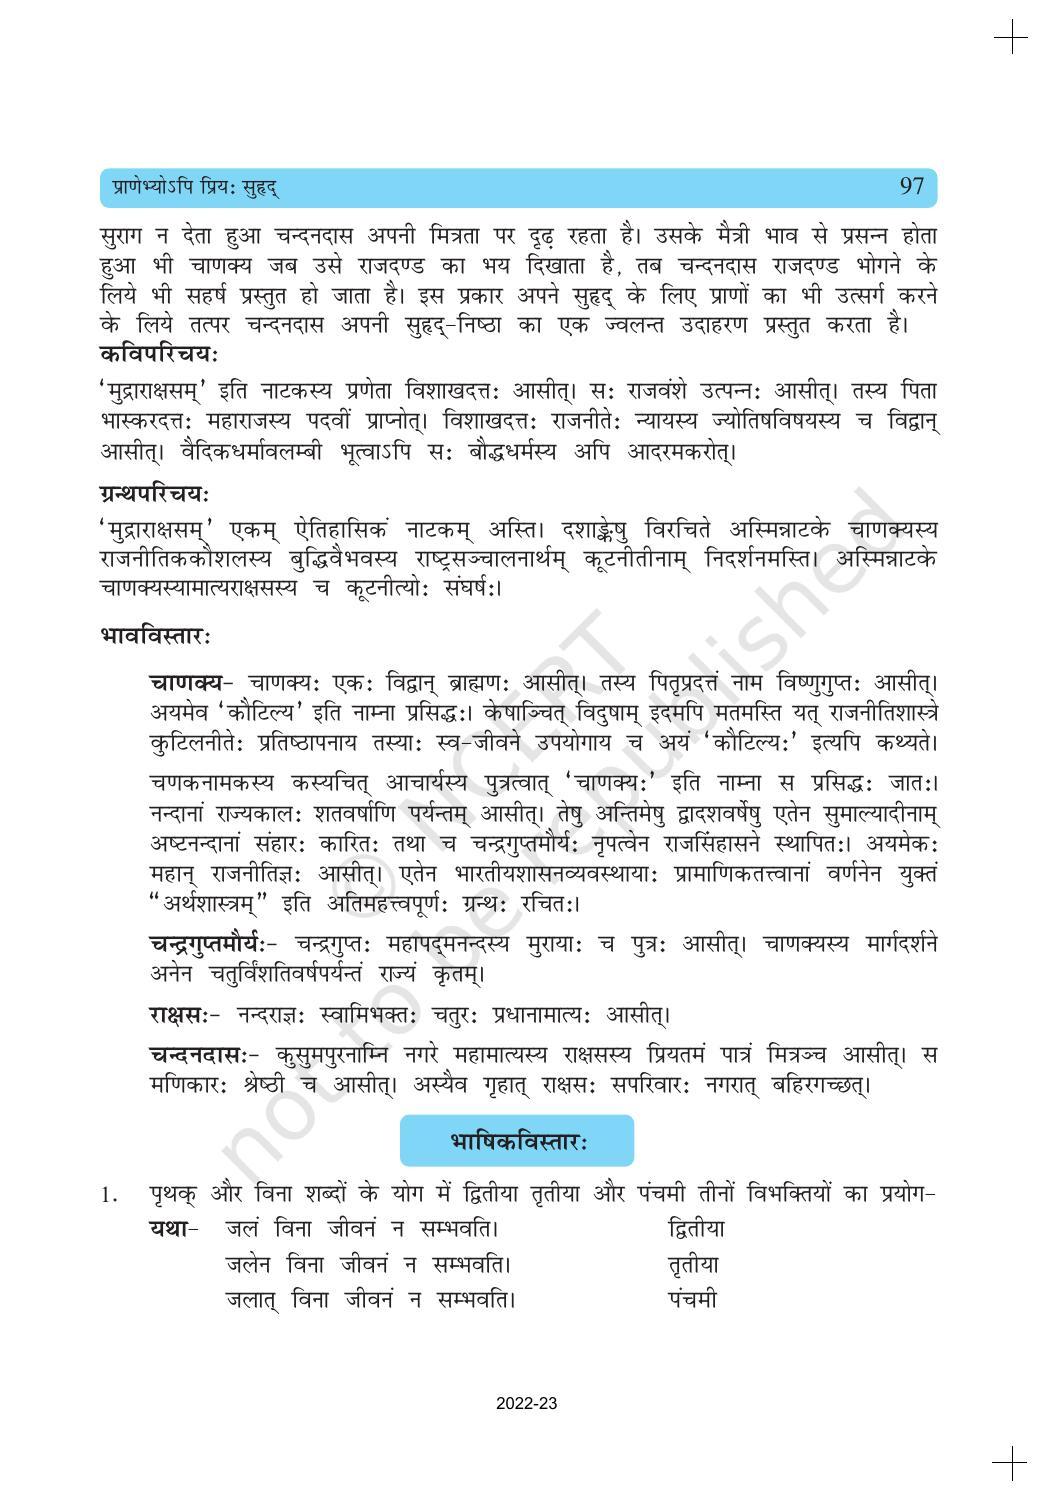 NCERT Book for Class 10 Sanskrit Chapter 11 प्राणेभ्योऽपि प्रियः सुह्रद् - Page 8